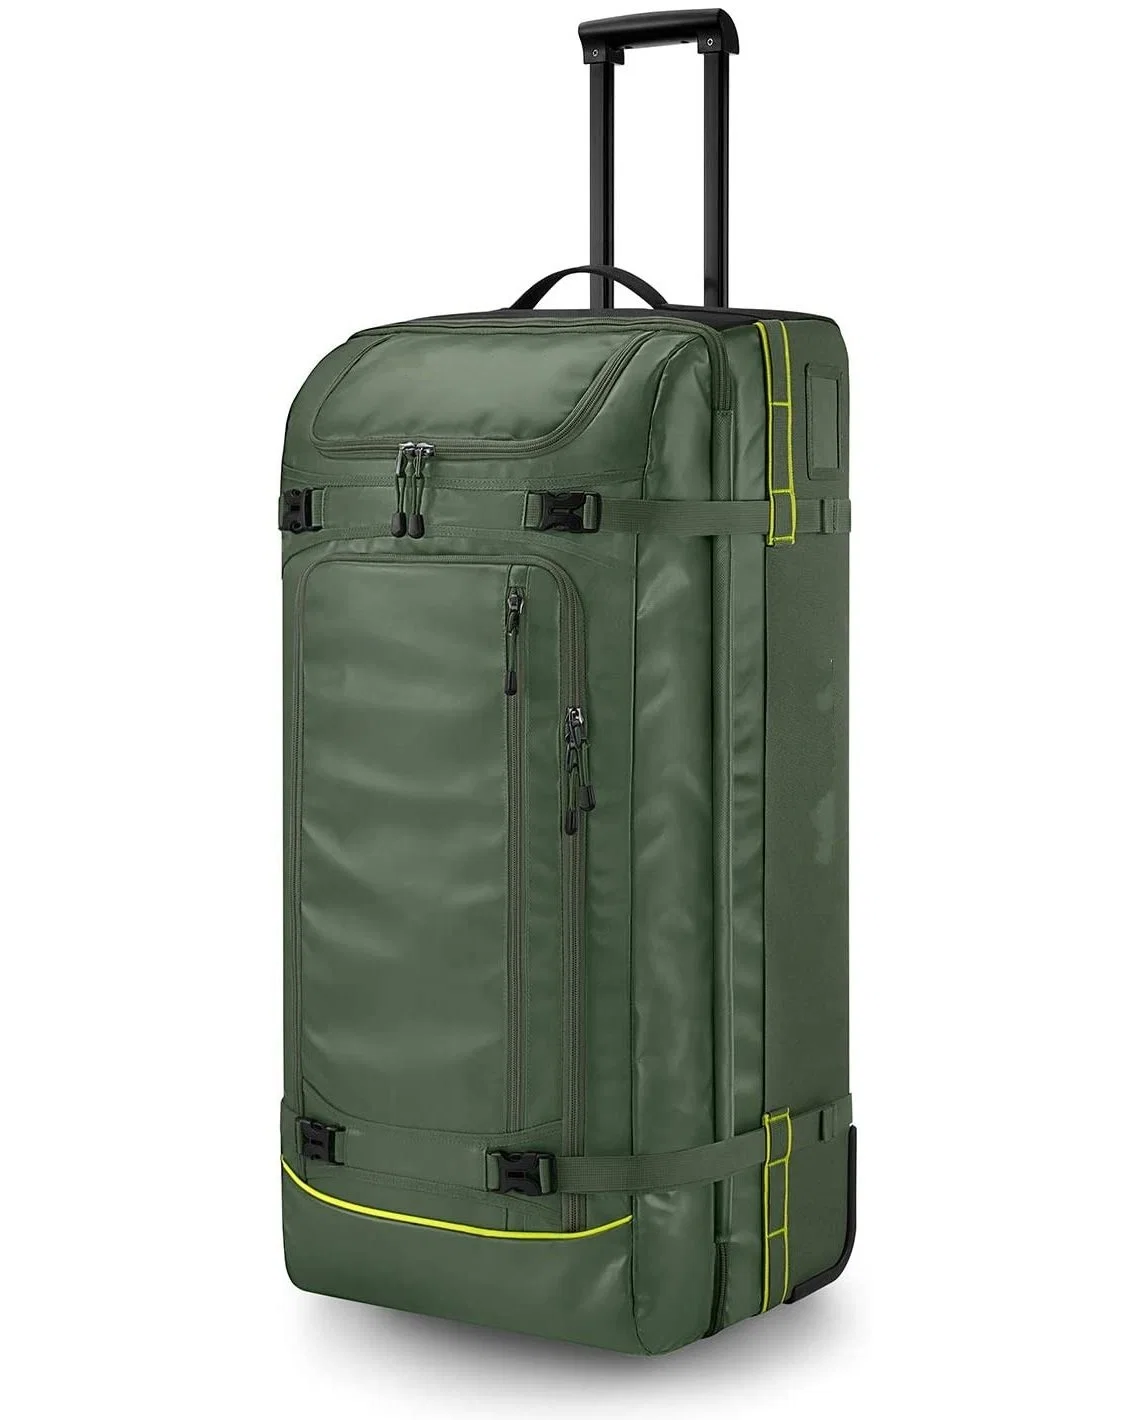 Custom передвижной динамического Duffle сумка с колесами, 100 л воды от комаров больших колесных поездки Duffel багажа, зеленый для спортивных открытый спортзал рюкзак Женщины Мужчины